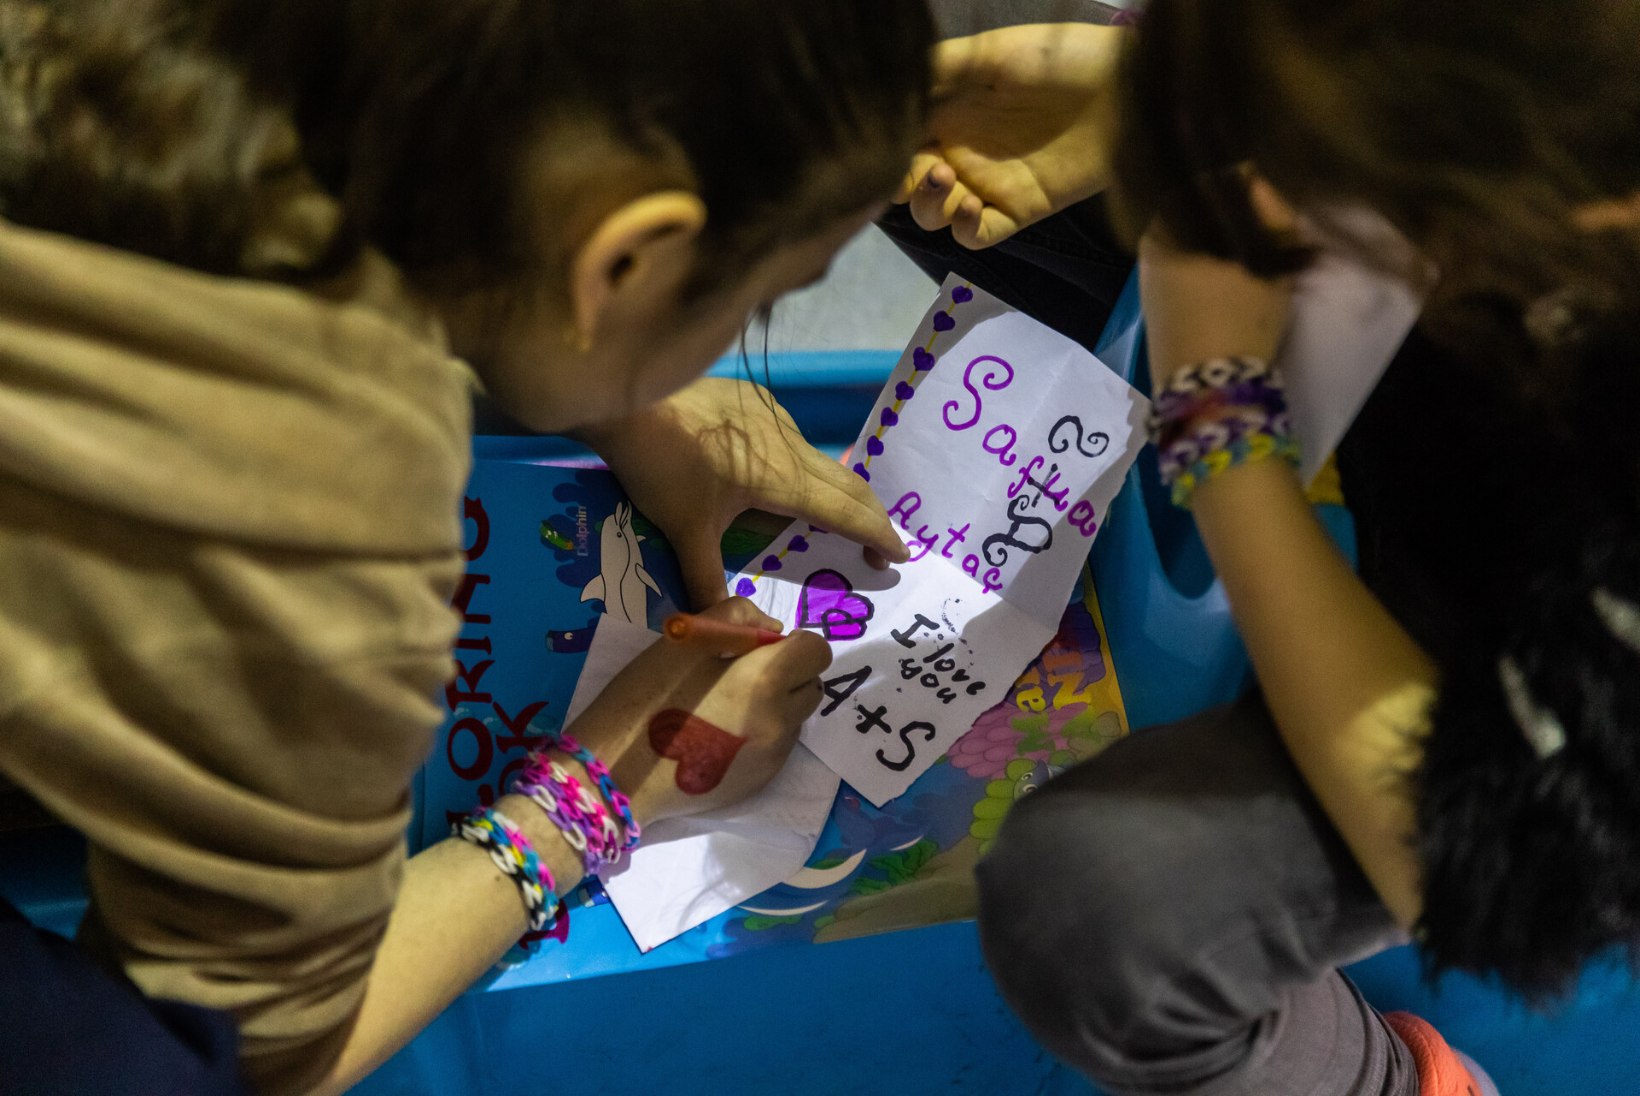 ÕHTULEHT MOLDOVAS | GALERII | Elu põgenikelaagris: ängistav koht, kus kohtuvad laste naeruhõiked ja vanemate pisarad, lootus helgemate päevade nimel ja teadmatus tuleviku ees